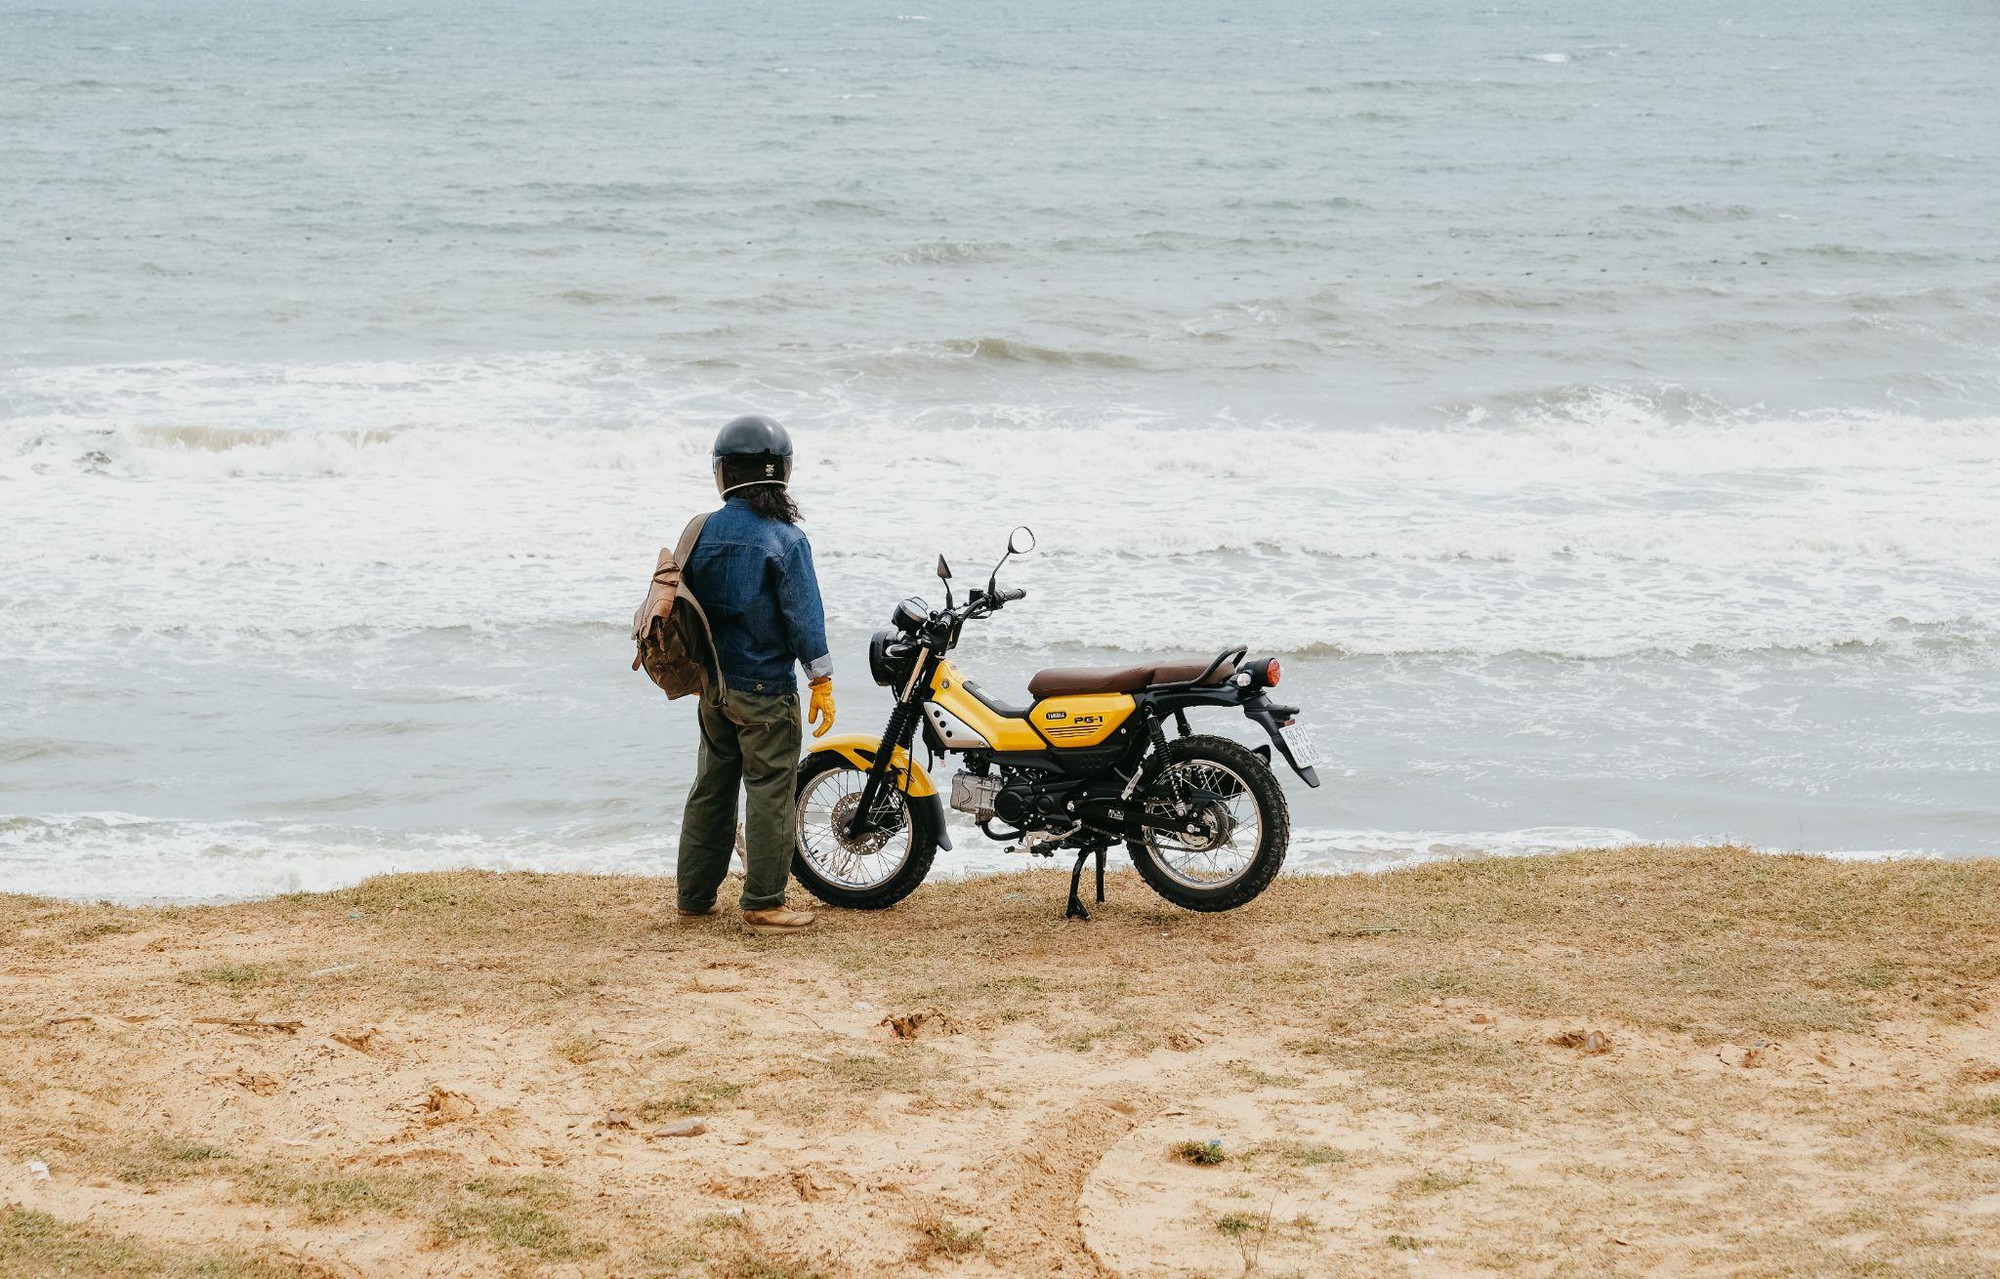 Nếu muốn phượt bằng xe máy thì đây là 4 trải nghiệm du lịch thú vị đáng tham khảo - Ảnh 2.